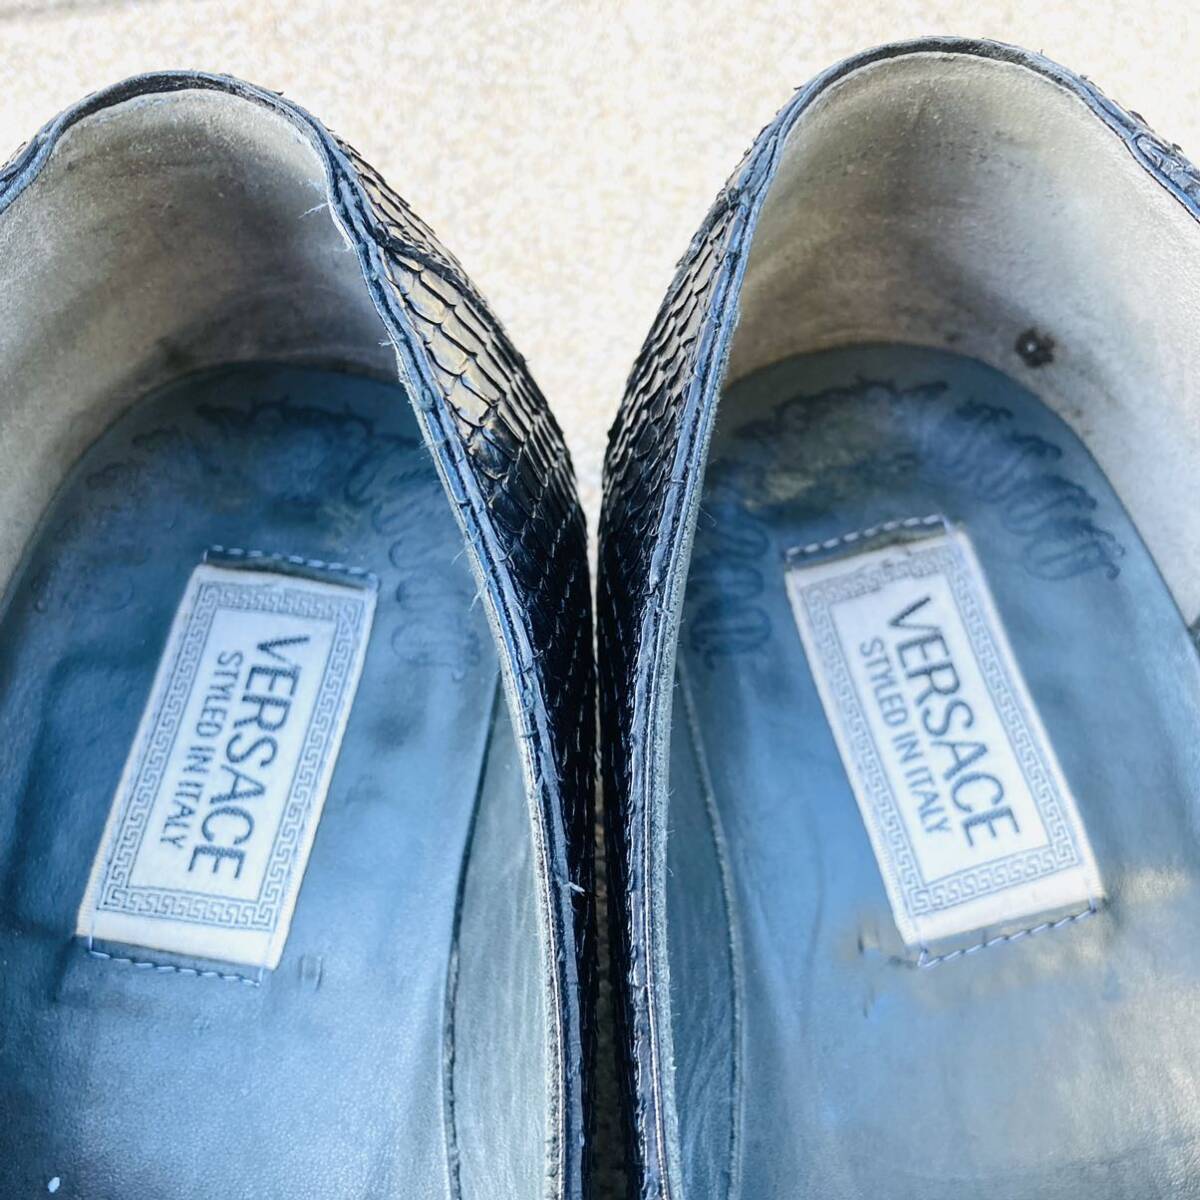 * превосходный товар Gianni Versace bell search 43 обувь примерно 27.5cm питон кожа . кожа .he винт ne-k туфли без застежки кожа обувь Loafer BK черный чёрный 